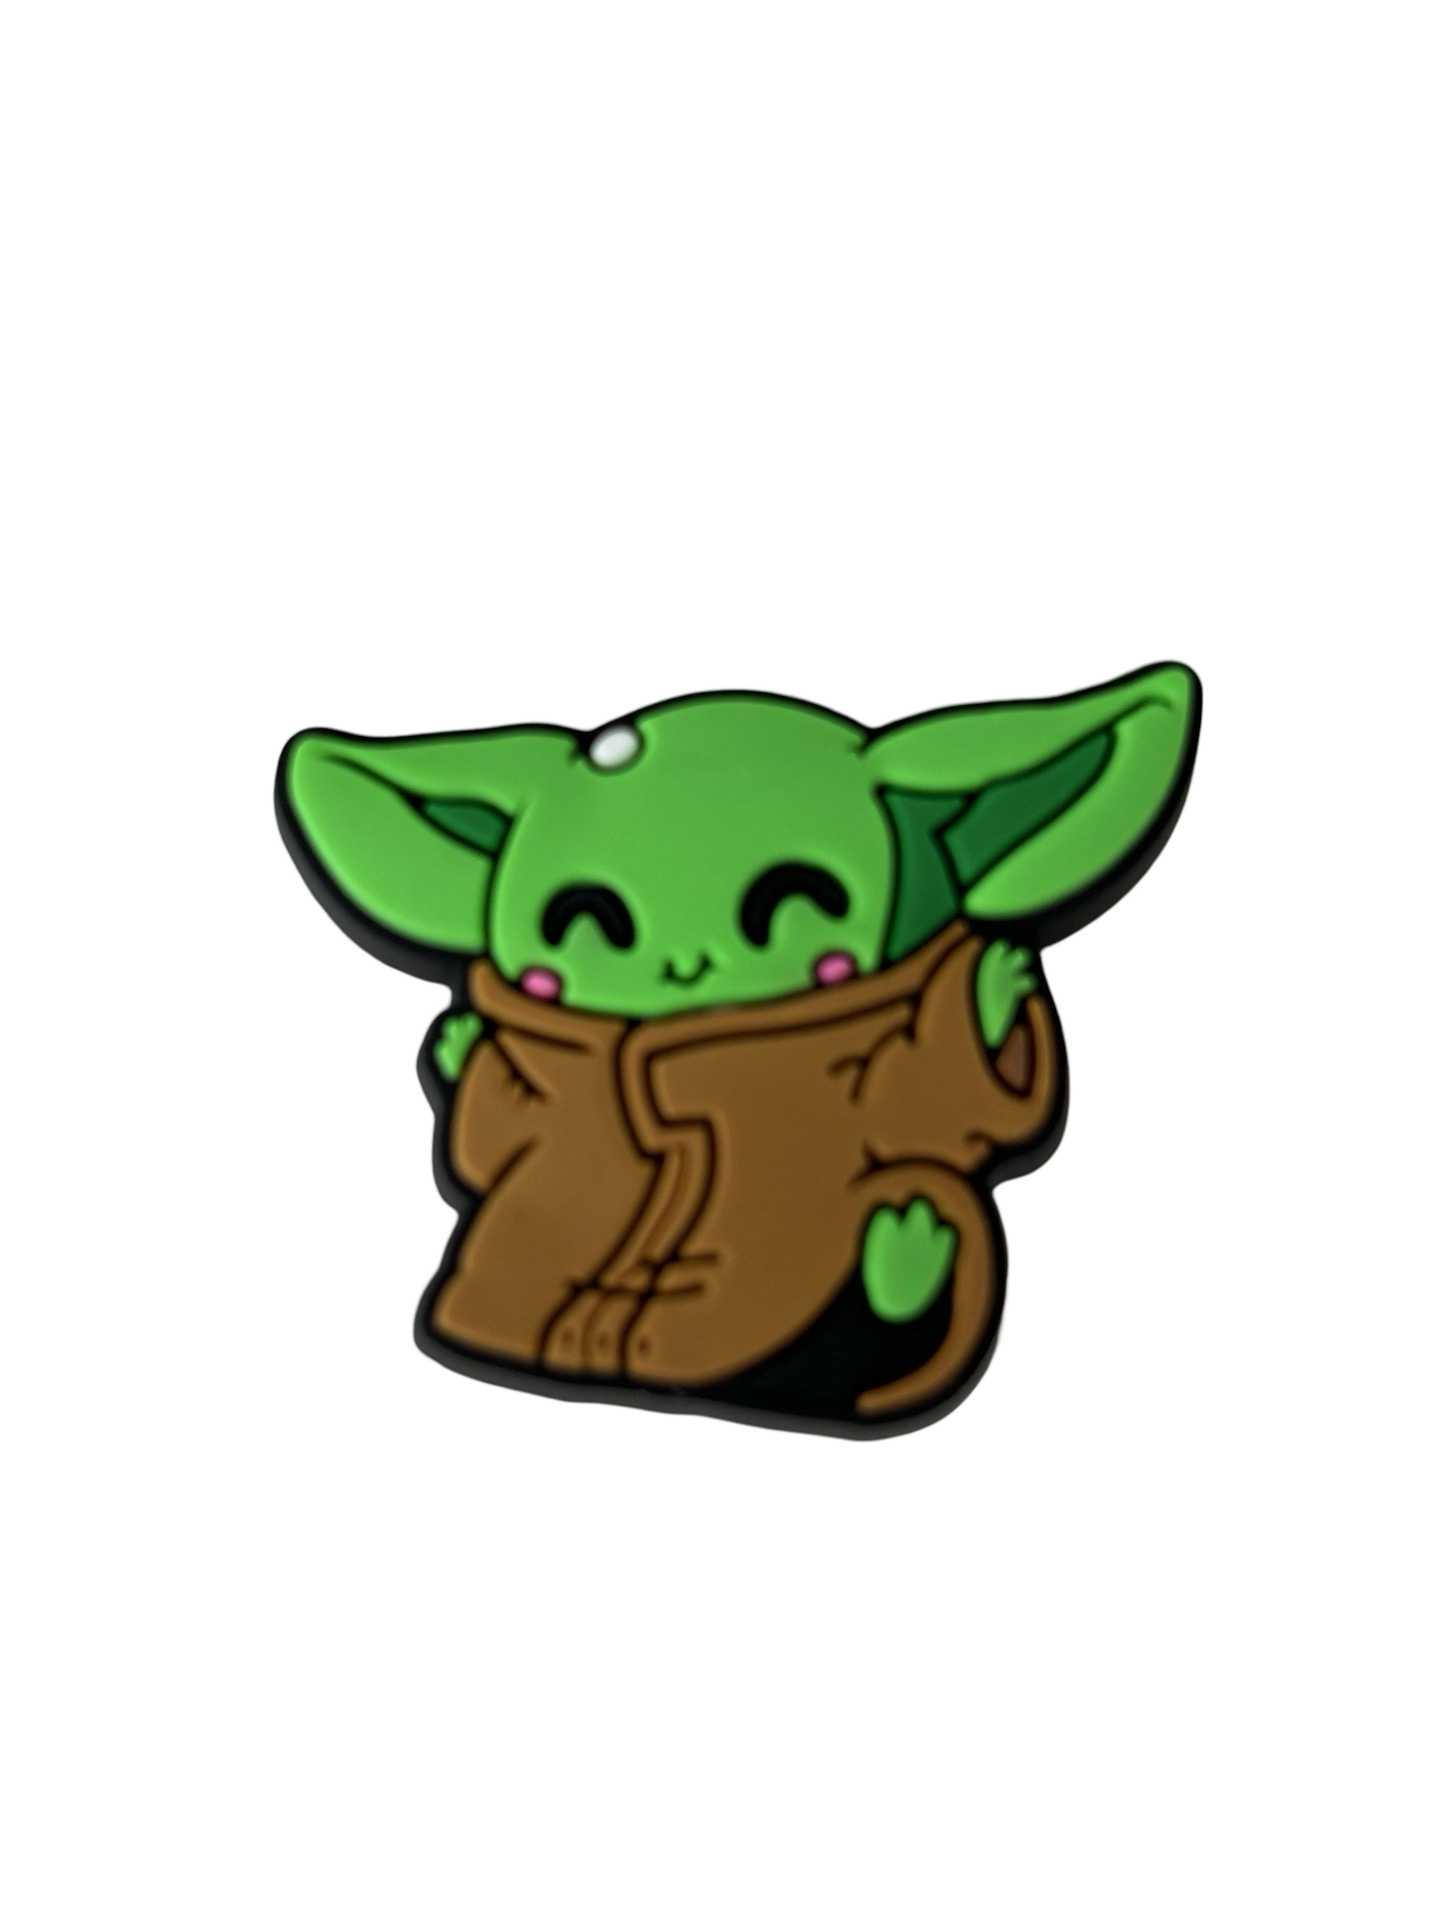 Yoda Croc Charm